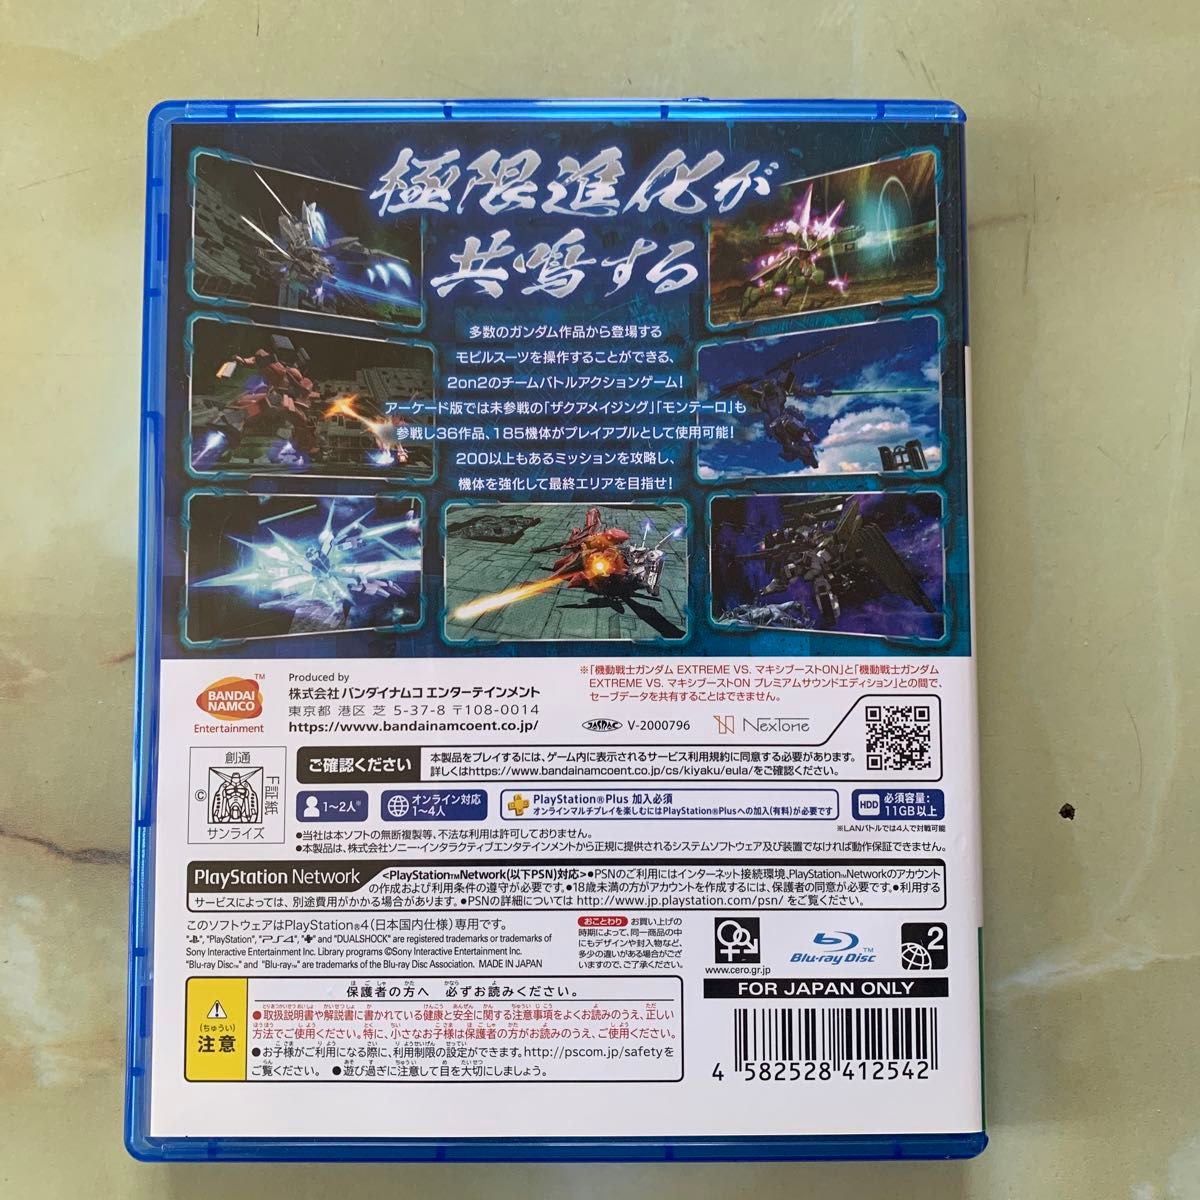 【PS4】 機動戦士ガンダム EXTREME VS. マキシブーストON [通常版] バナパスポートカード付